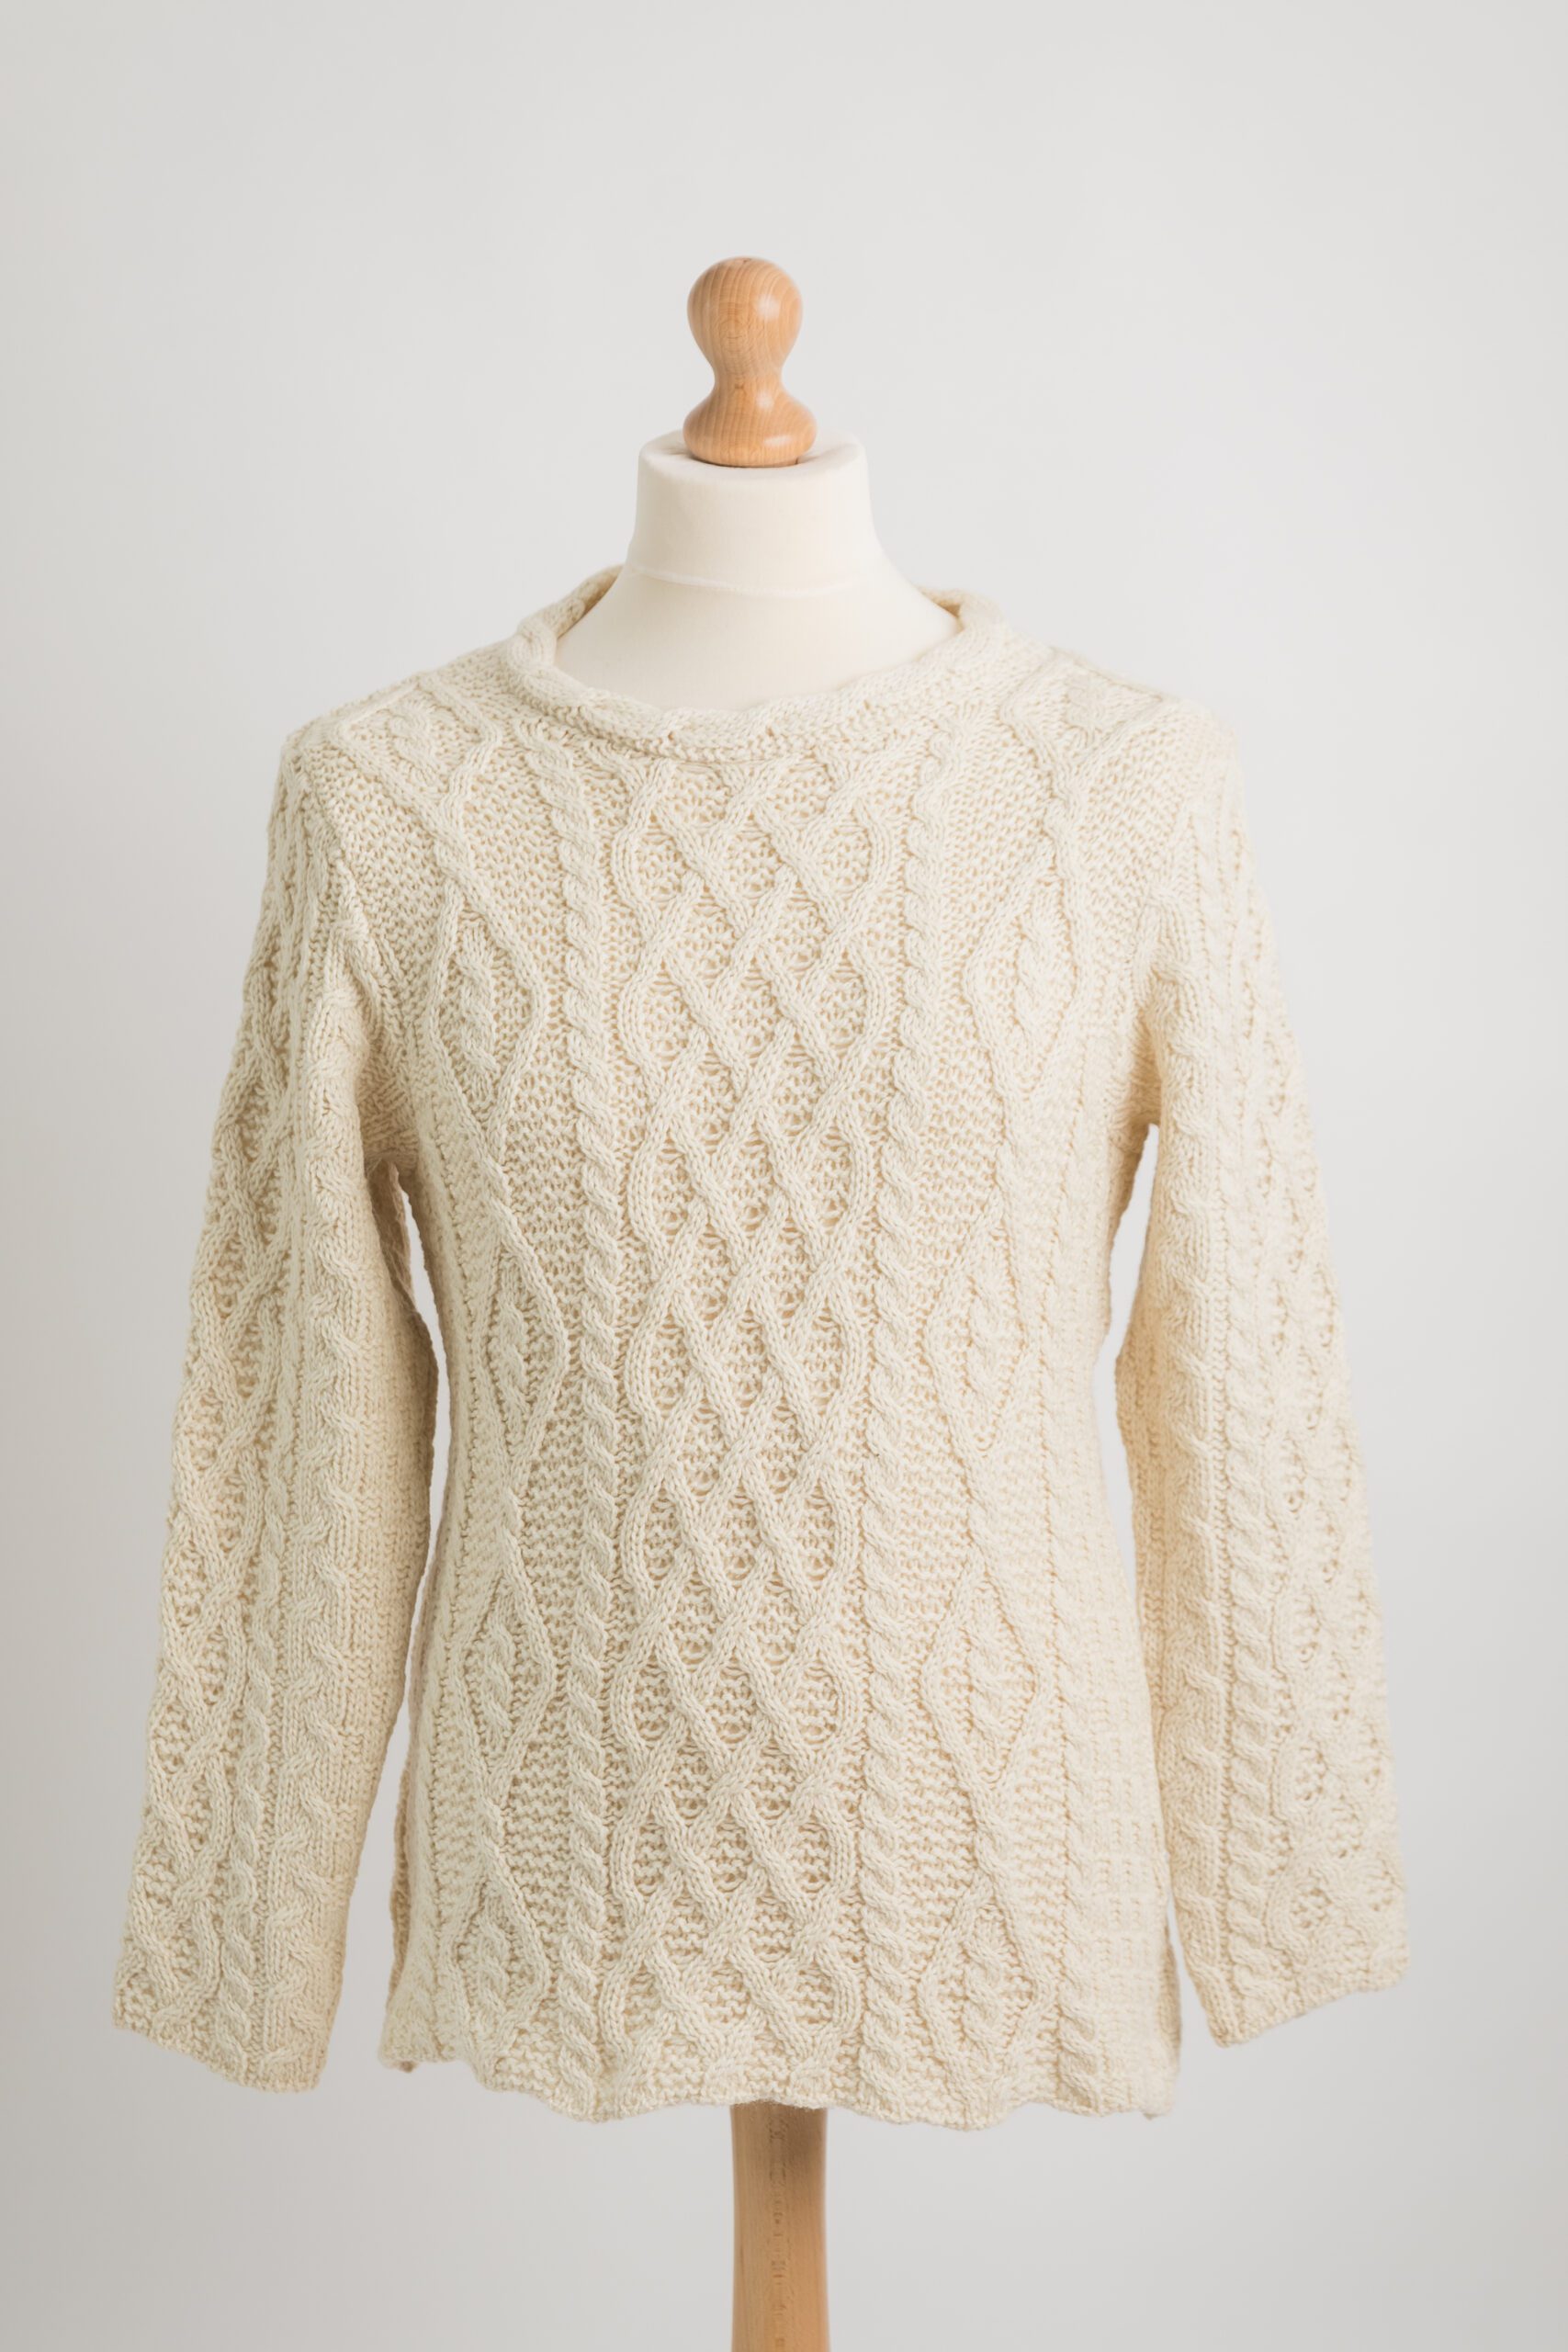 Diamond Knit Sweater - Aran Islands Knitwear